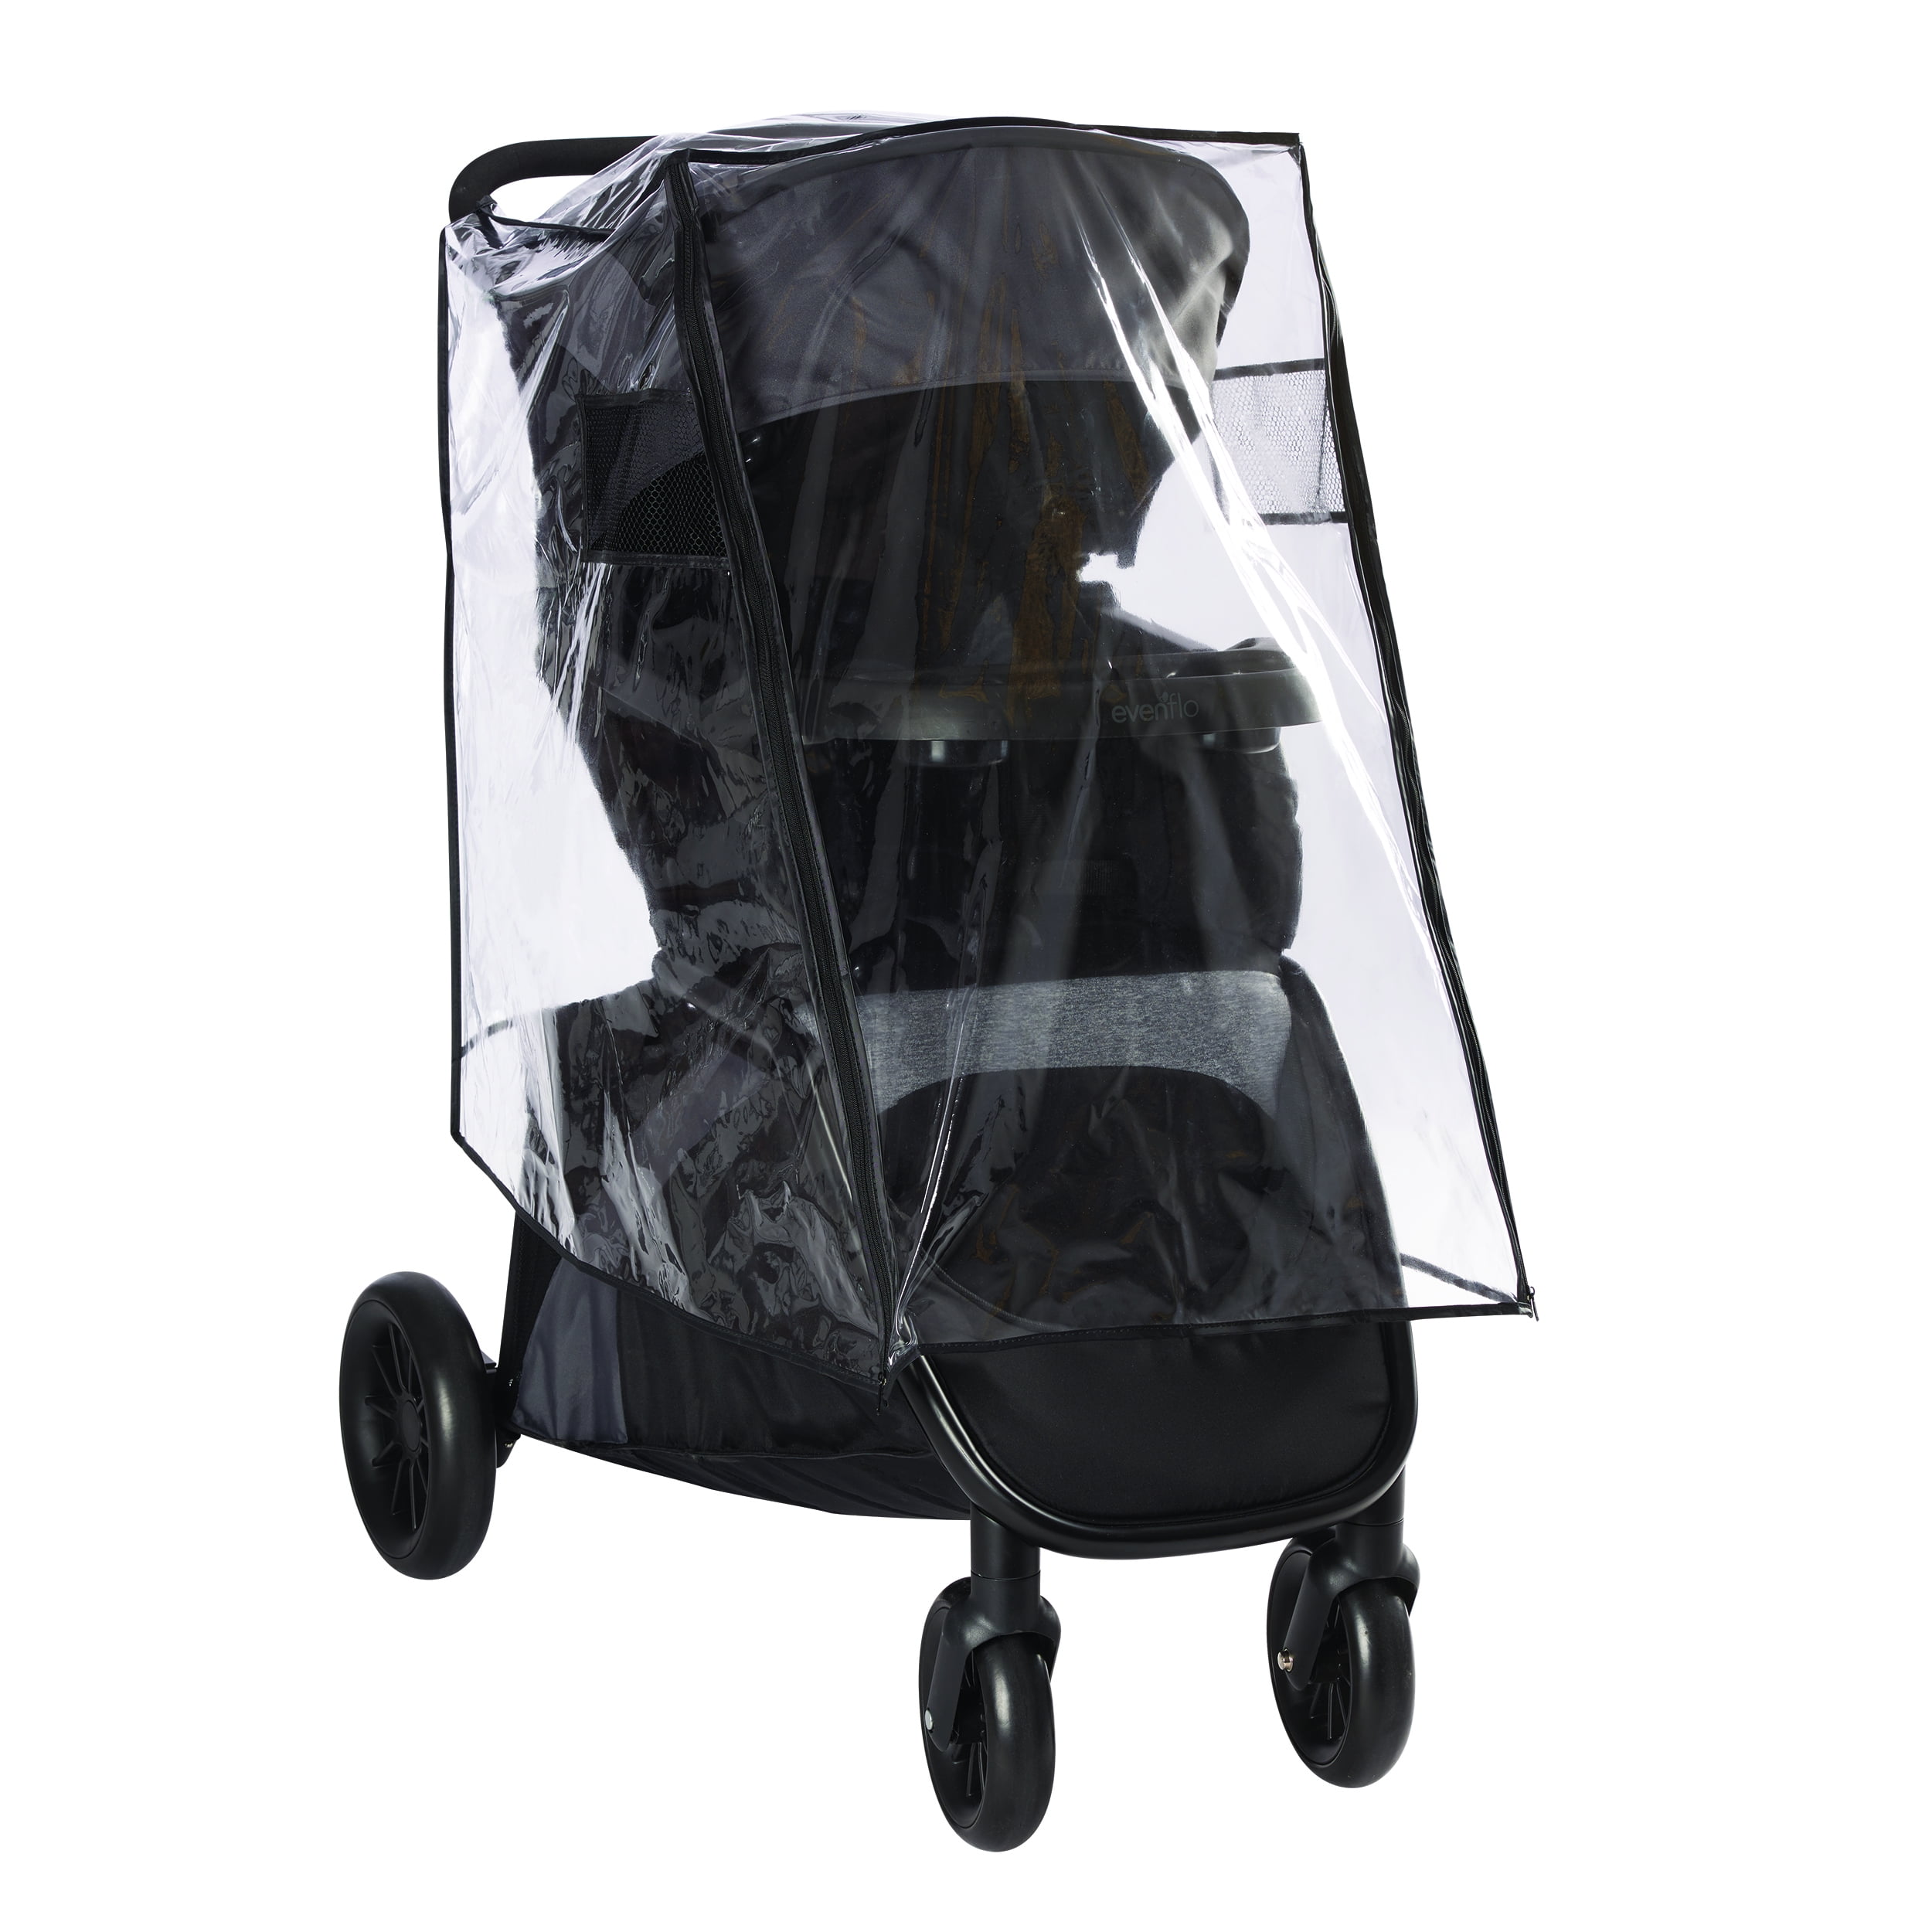 plastic cover for stroller